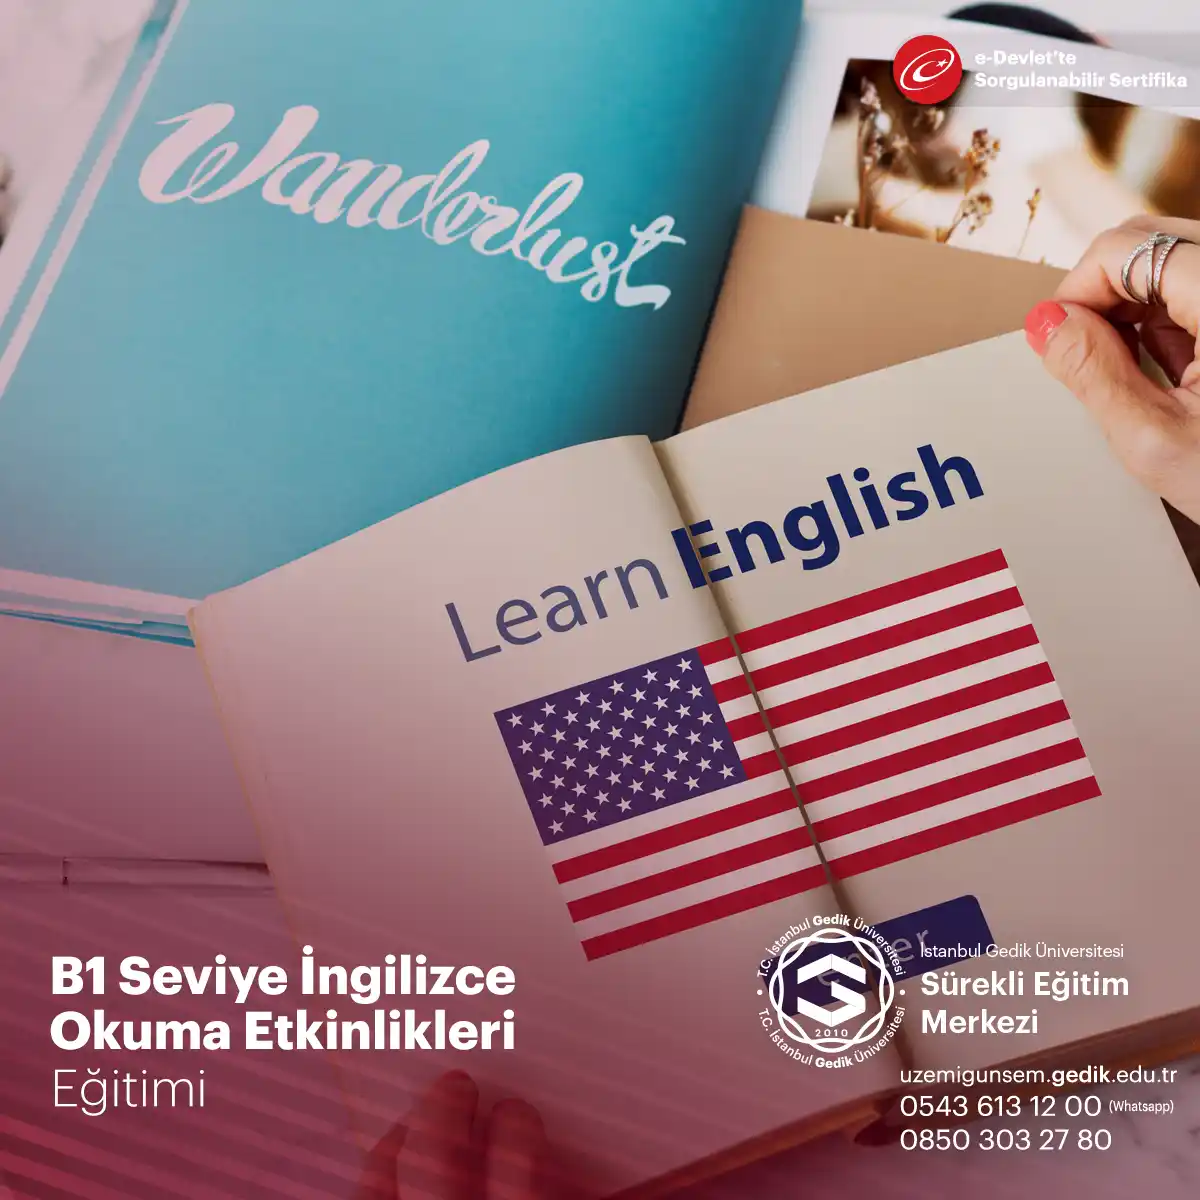 B1 Seviye İngilizce Okuma Etkinlikleri Eğitimi, İngilizce öğrenenler için önemli bir öğrenme fırsatı sunar.